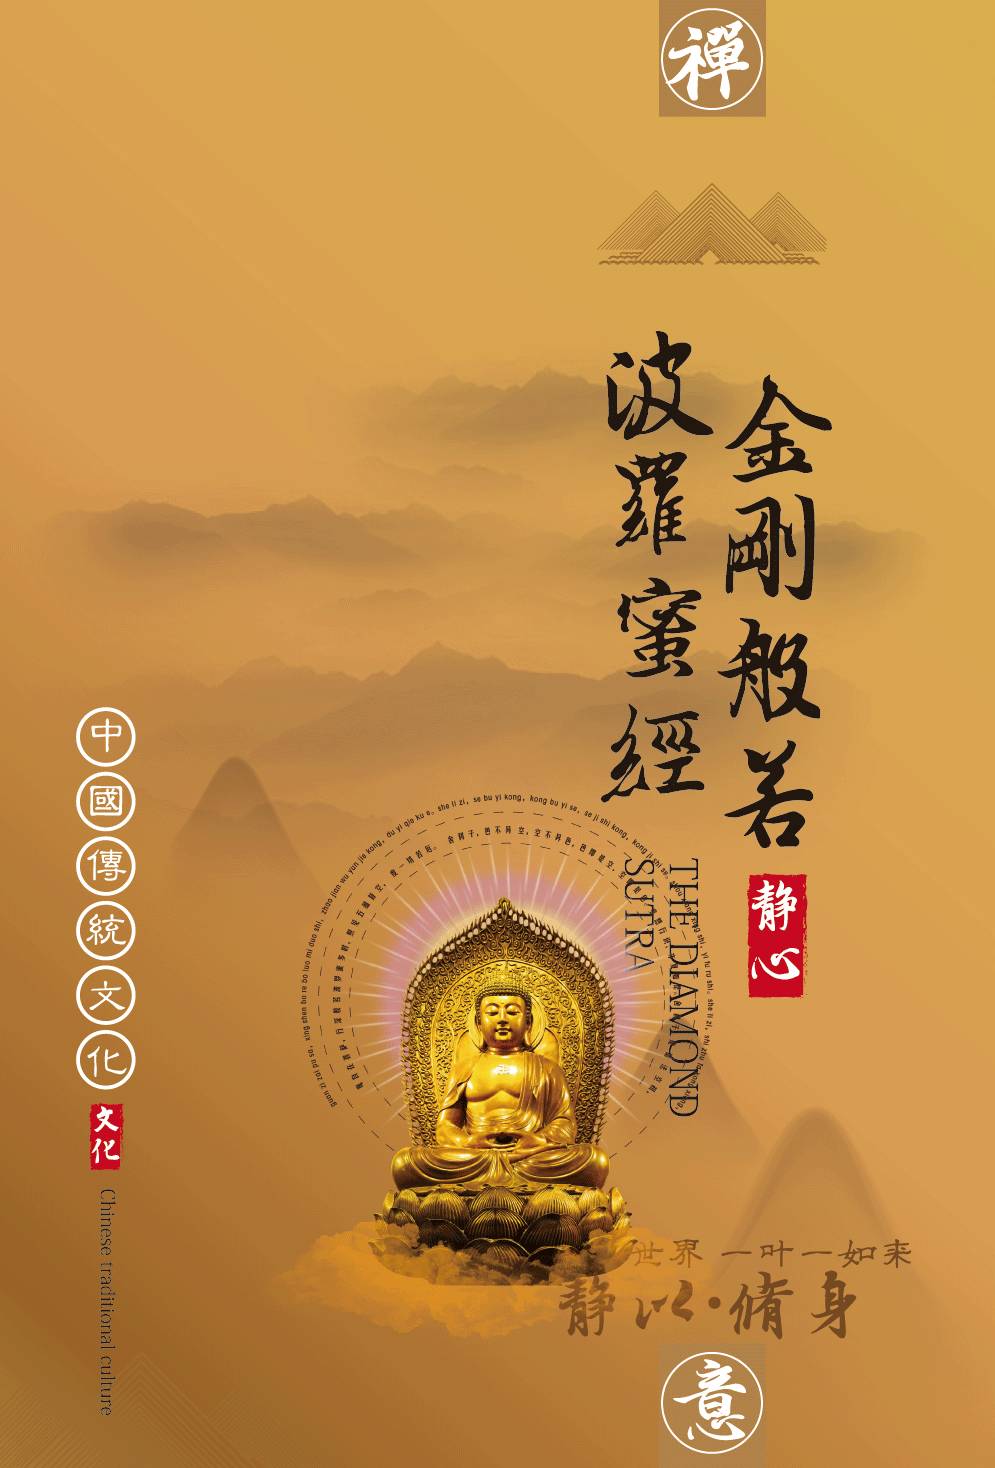 《金刚般若波罗蜜经》作为对中国文化影响最大的佛经之一,既是禅宗最